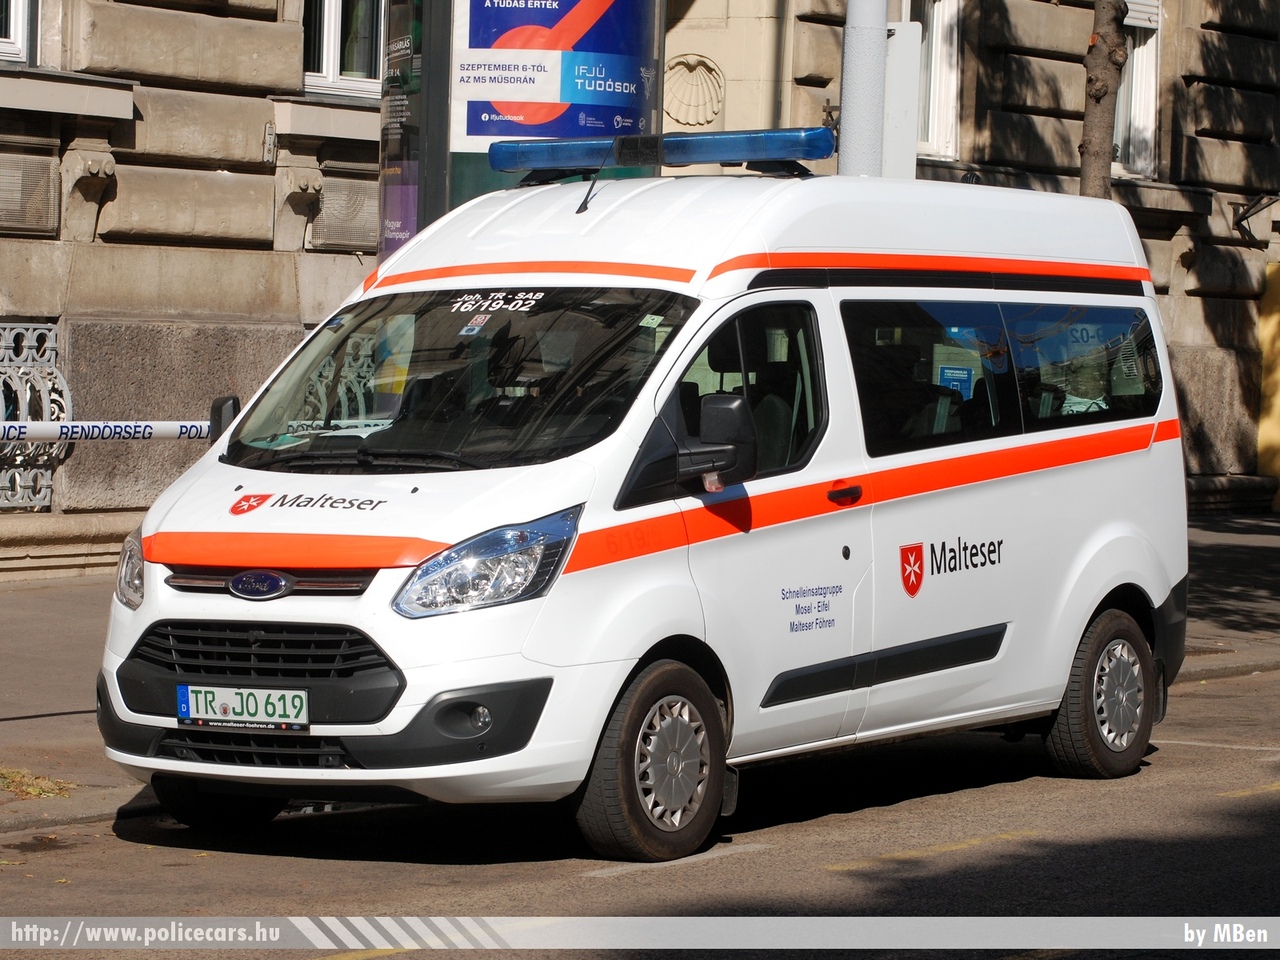 Ford Transit, Malteser Föhren, fotó: MBen
Keywords: ambulance német Németország mentő mentőautó Germany german